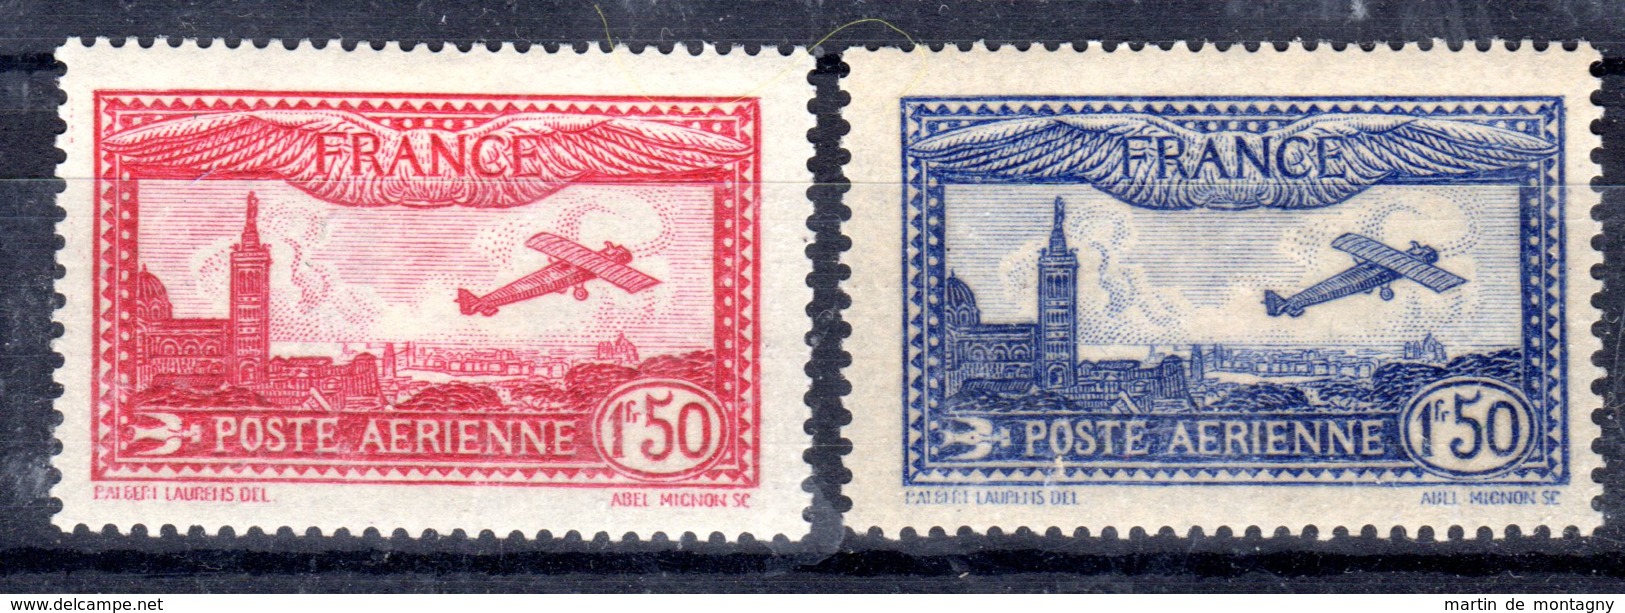 8.6.1930 Und 11.11.1930; Flugpostmarken; Mi-Nr. 251 + 255, Ungebraucht *, Los 50915 - 1927-1959 Mint/hinged